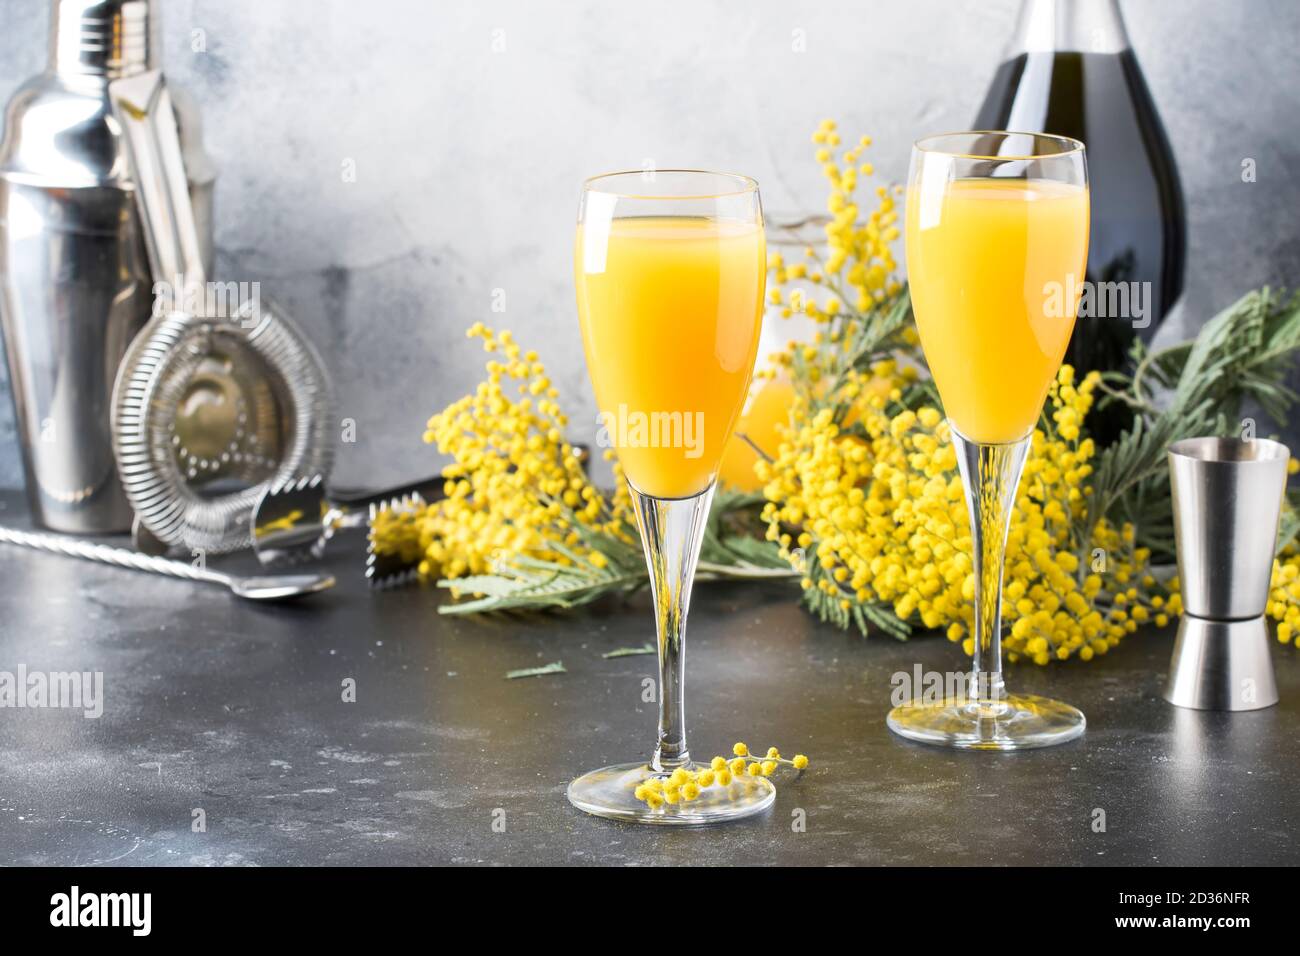 comentario Mierda Caballo Cóctel de alcohol de primavera mimosa con jugo de naranja y champagne seco  frío o vino espumoso en copas, barra gris de fondo con flores de yelow  Fotografía de stock - Alamy